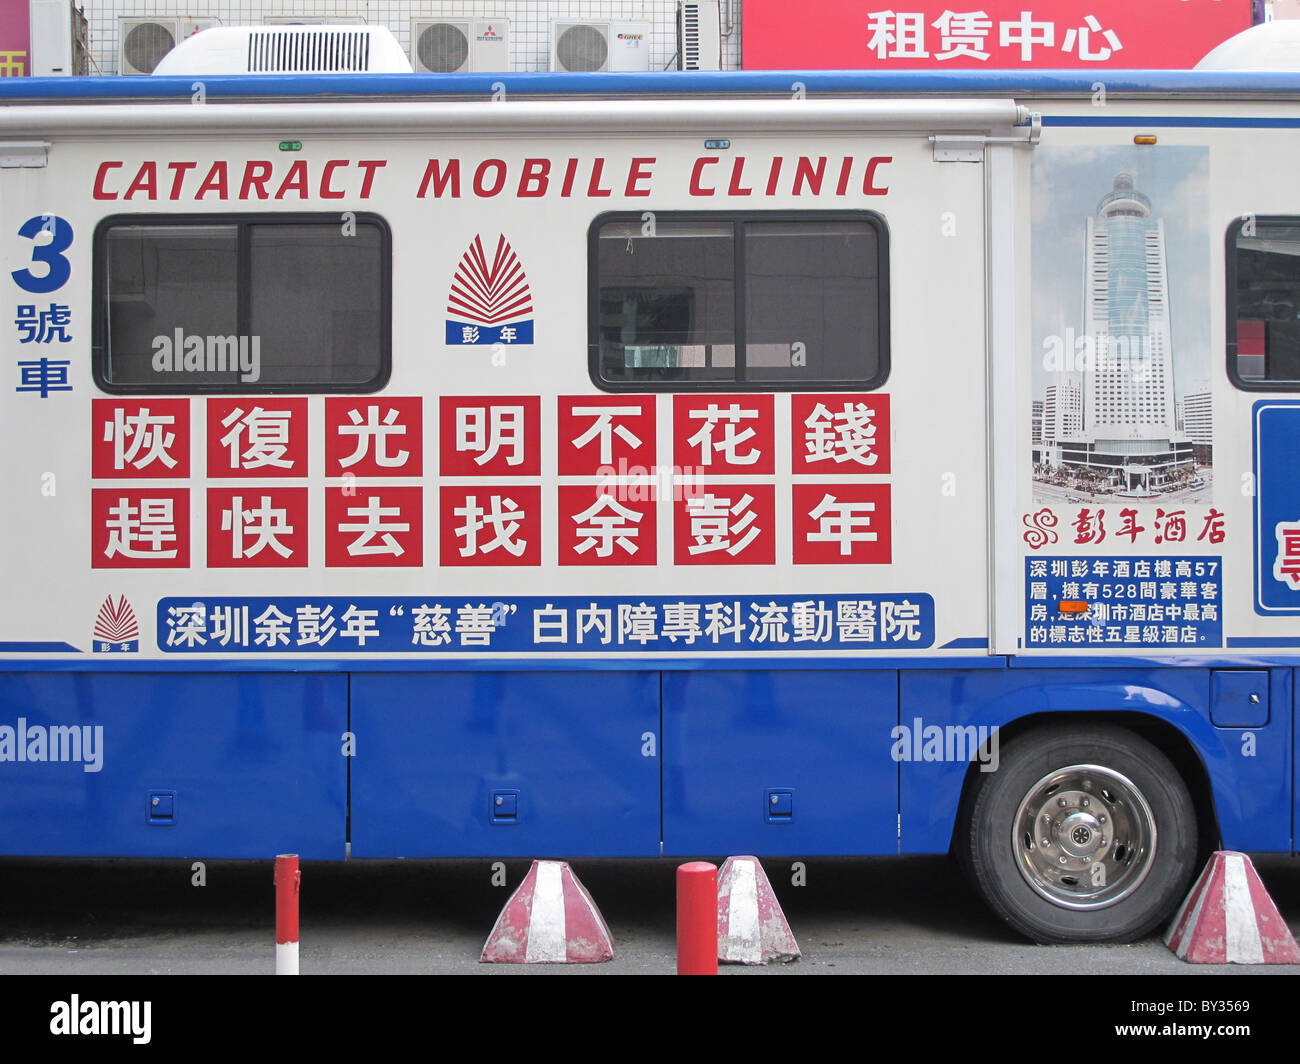 Mobile clinica di cataratta Shenzhen in Cina Foto Stock